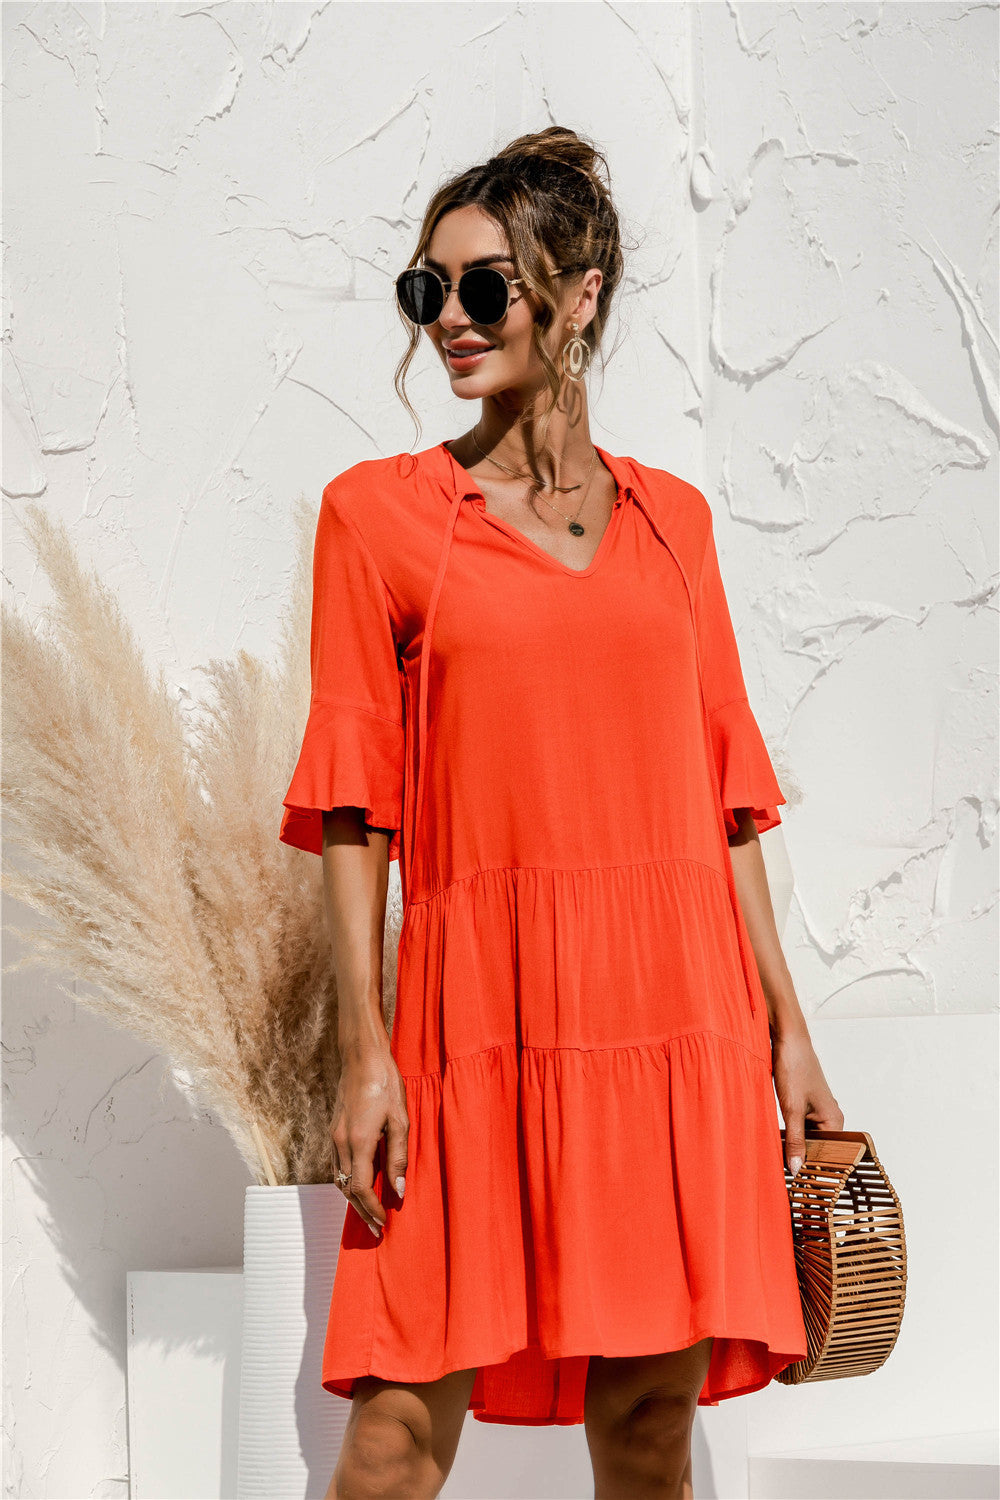 Casual Short Cake Style Daily Dresses-Dresses-Orange-S-Free Shipping Leatheretro